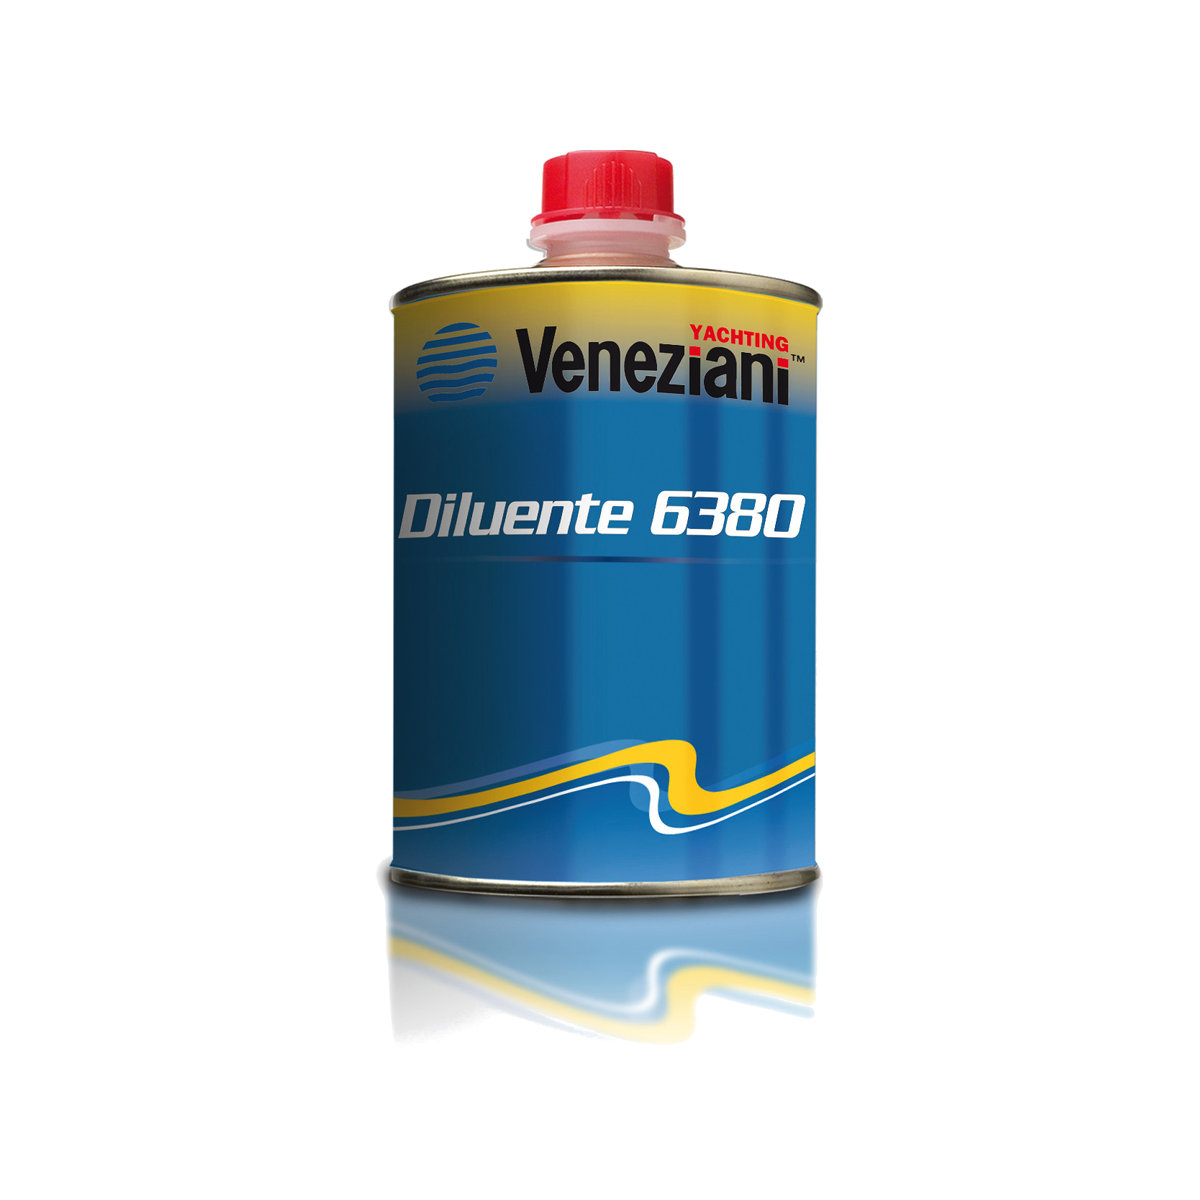 Veneziani verdunner 6380 voor product gummipaint, 500ml